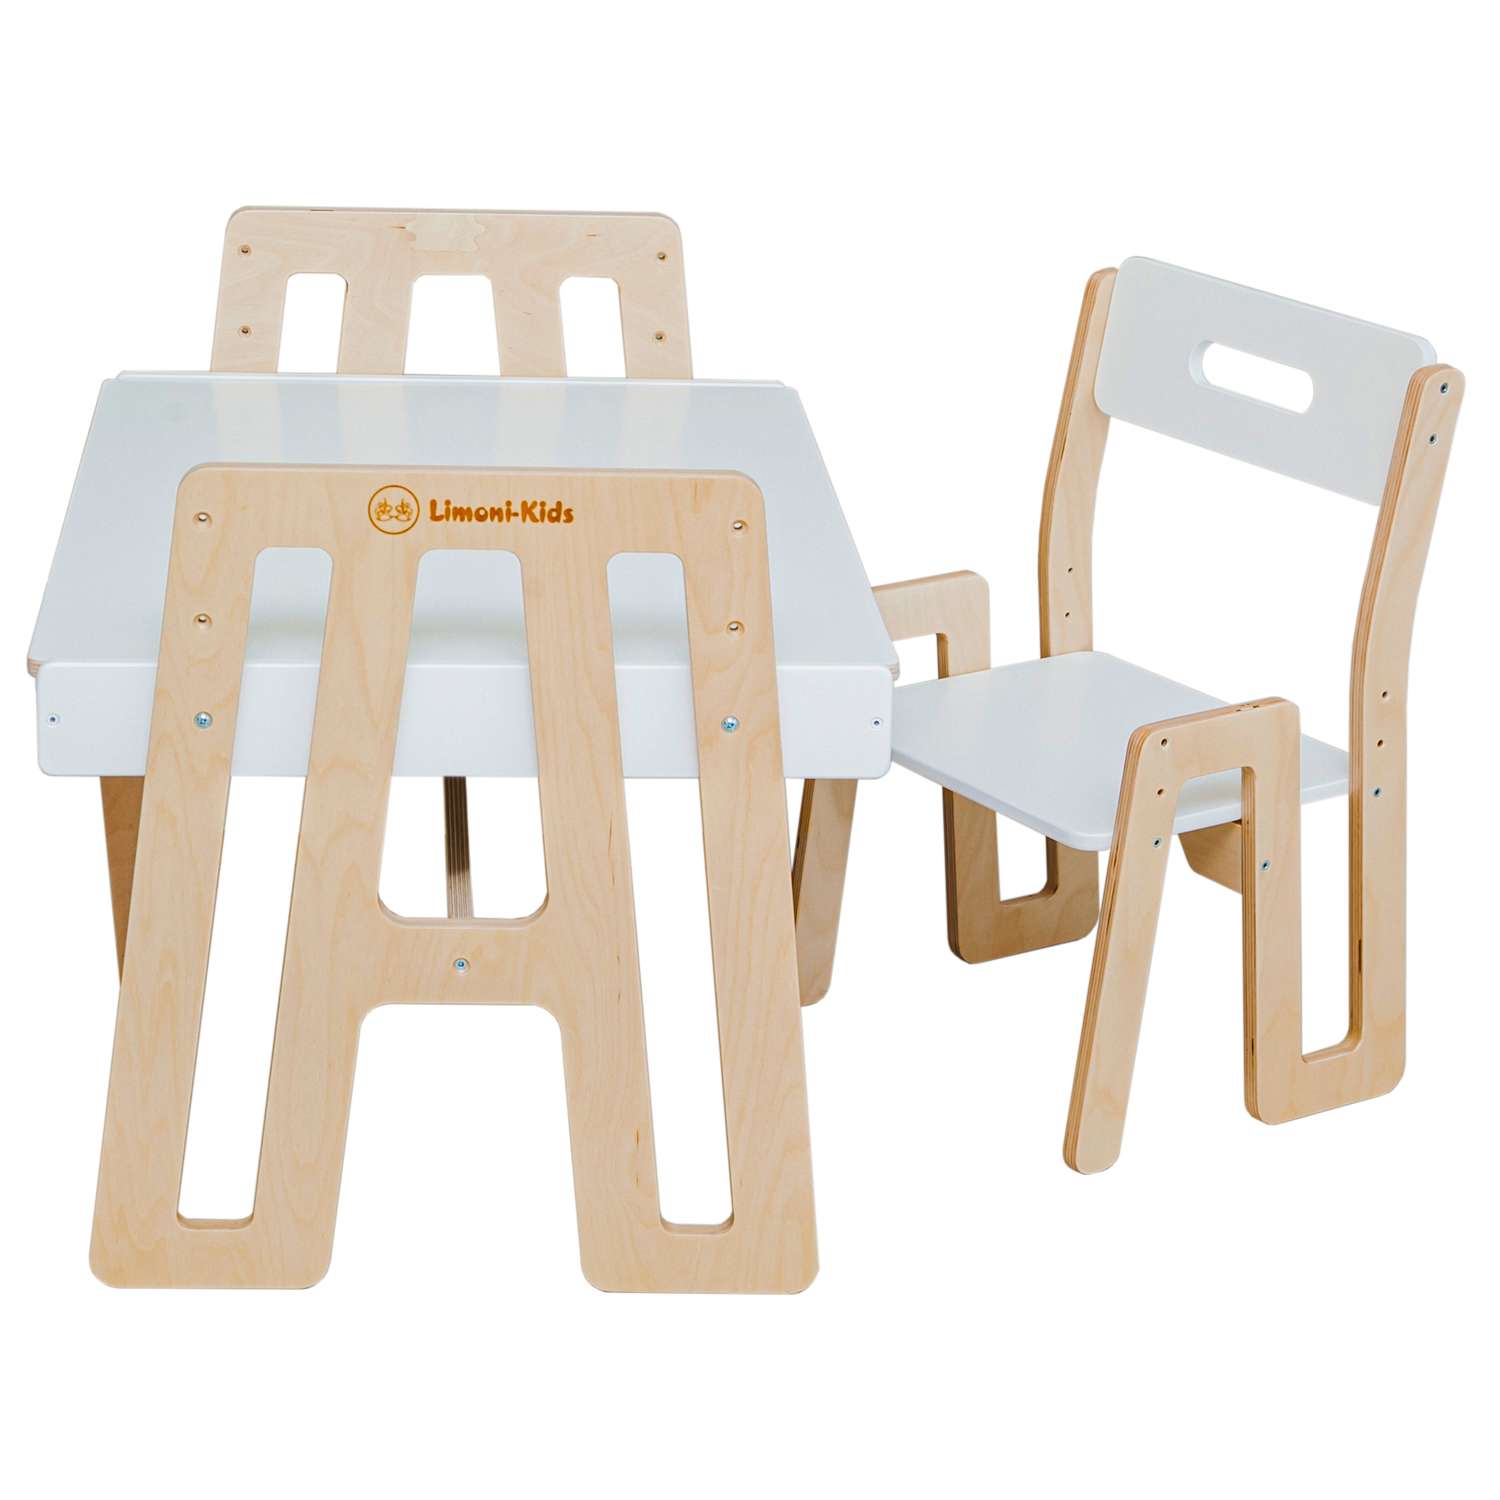 Как выбрать детский столик и стульчик - статья в интернет-магазине centerforstrategy.ru